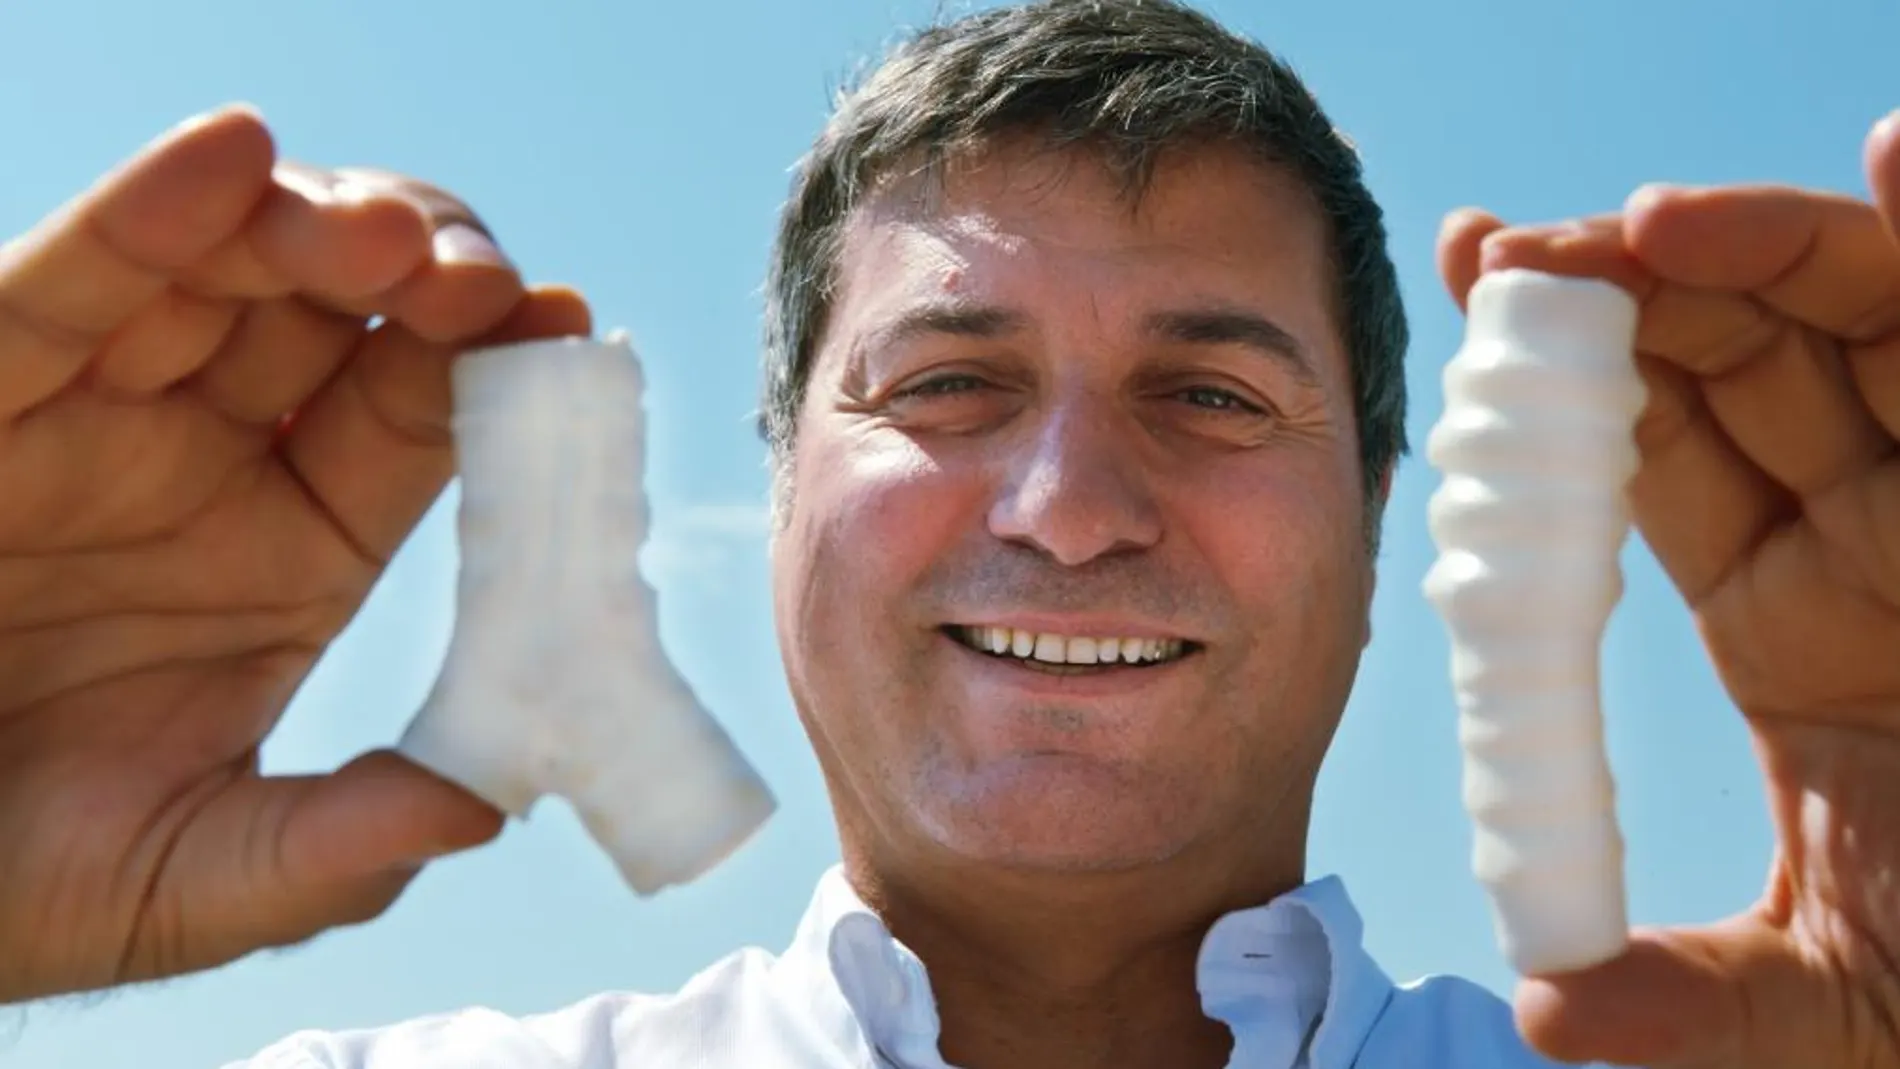 El profesor Paolo Macchiarini con dos estructuras artificiales empleadas en trasplantes